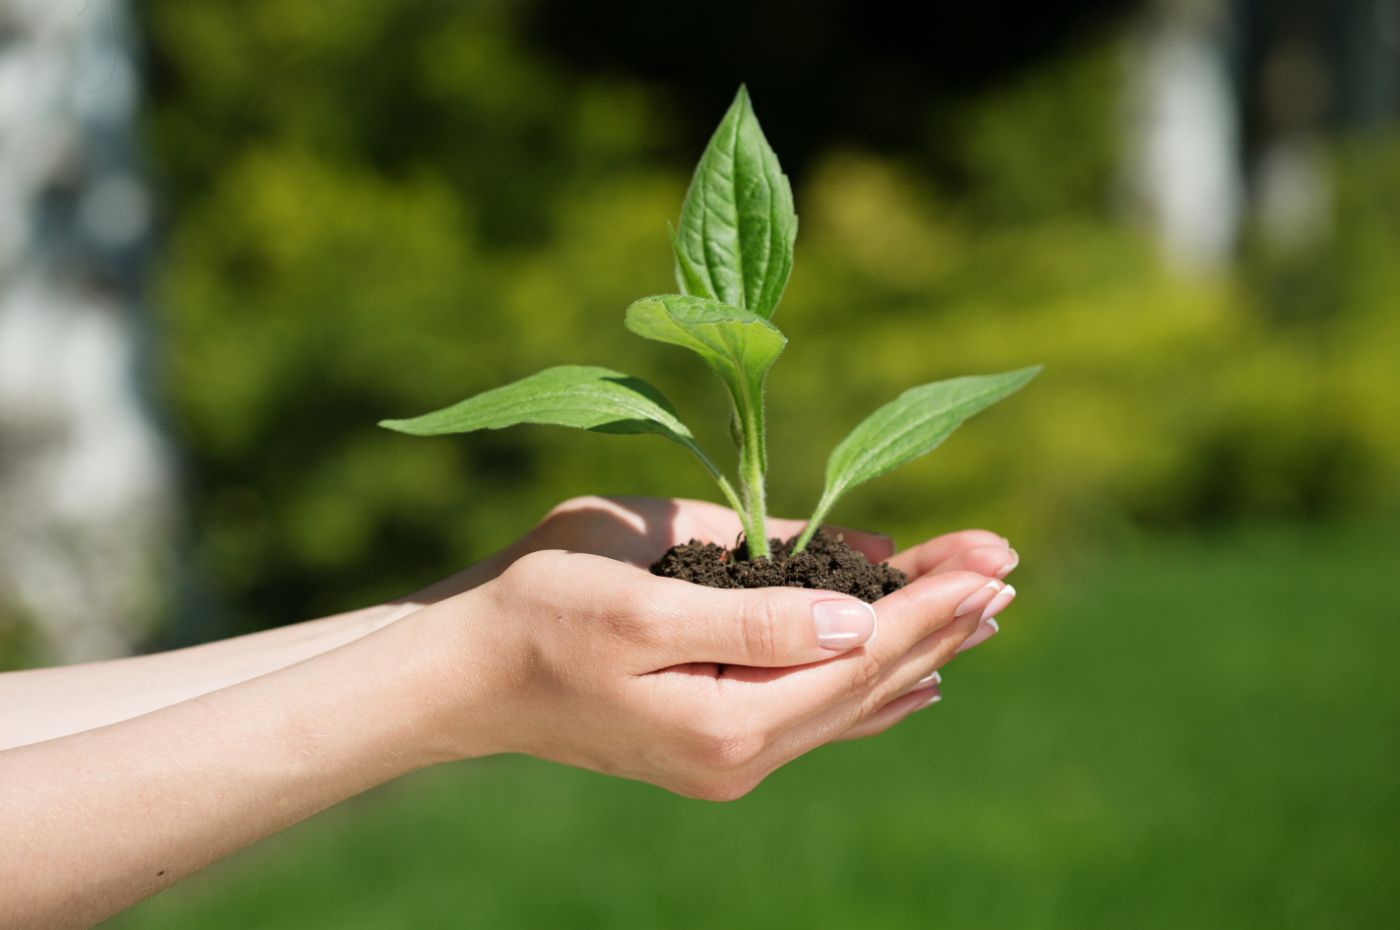 Mãos segurando uma muda de planta em um ambiente ao ar livre, simbolizando sustentabilidade e cuidado com o meio ambiente.